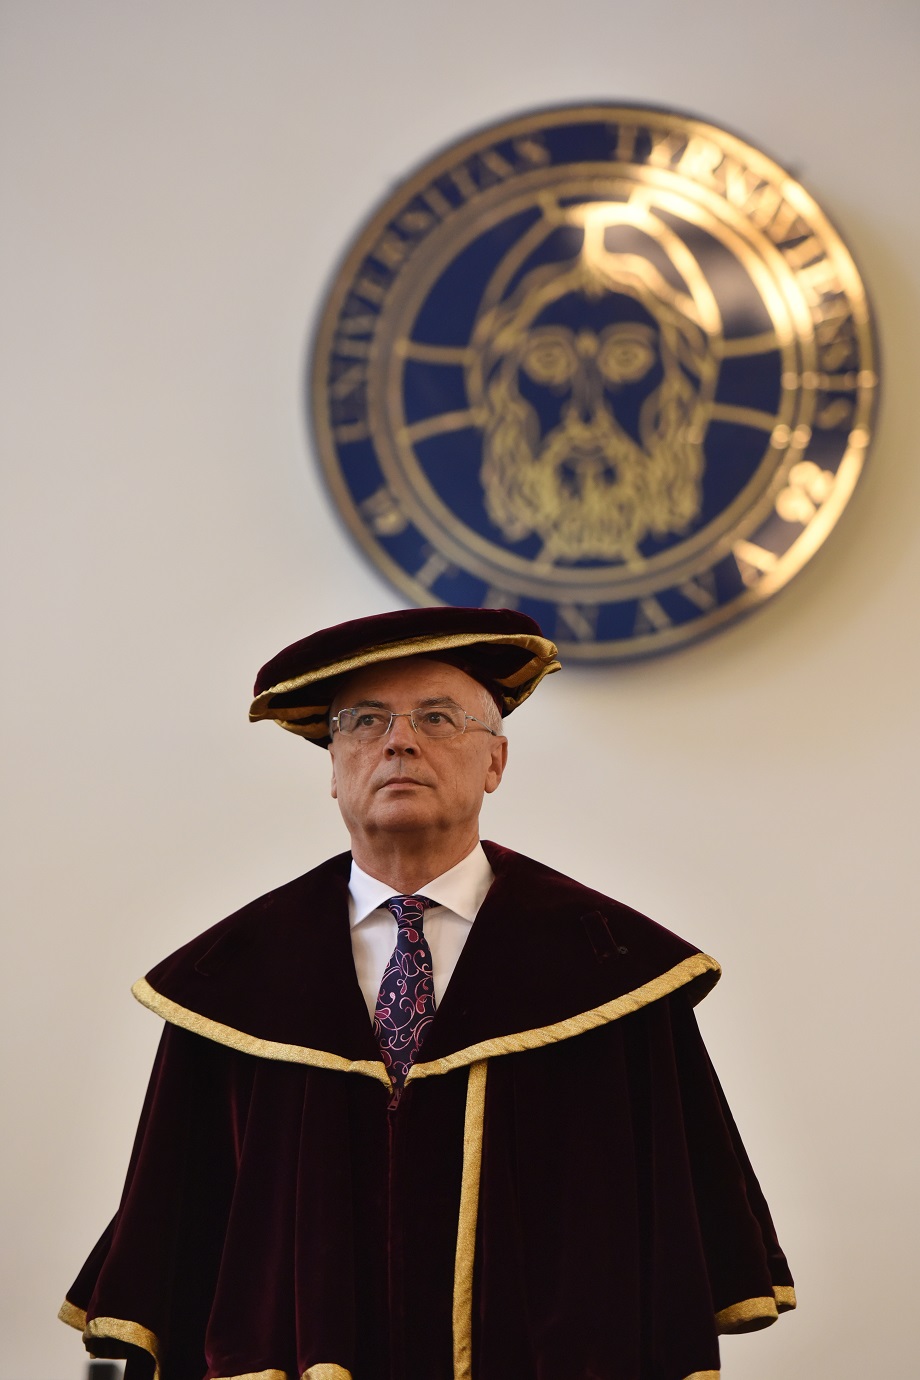 Rektor Trnavskej univerzity (TU) René Bílik